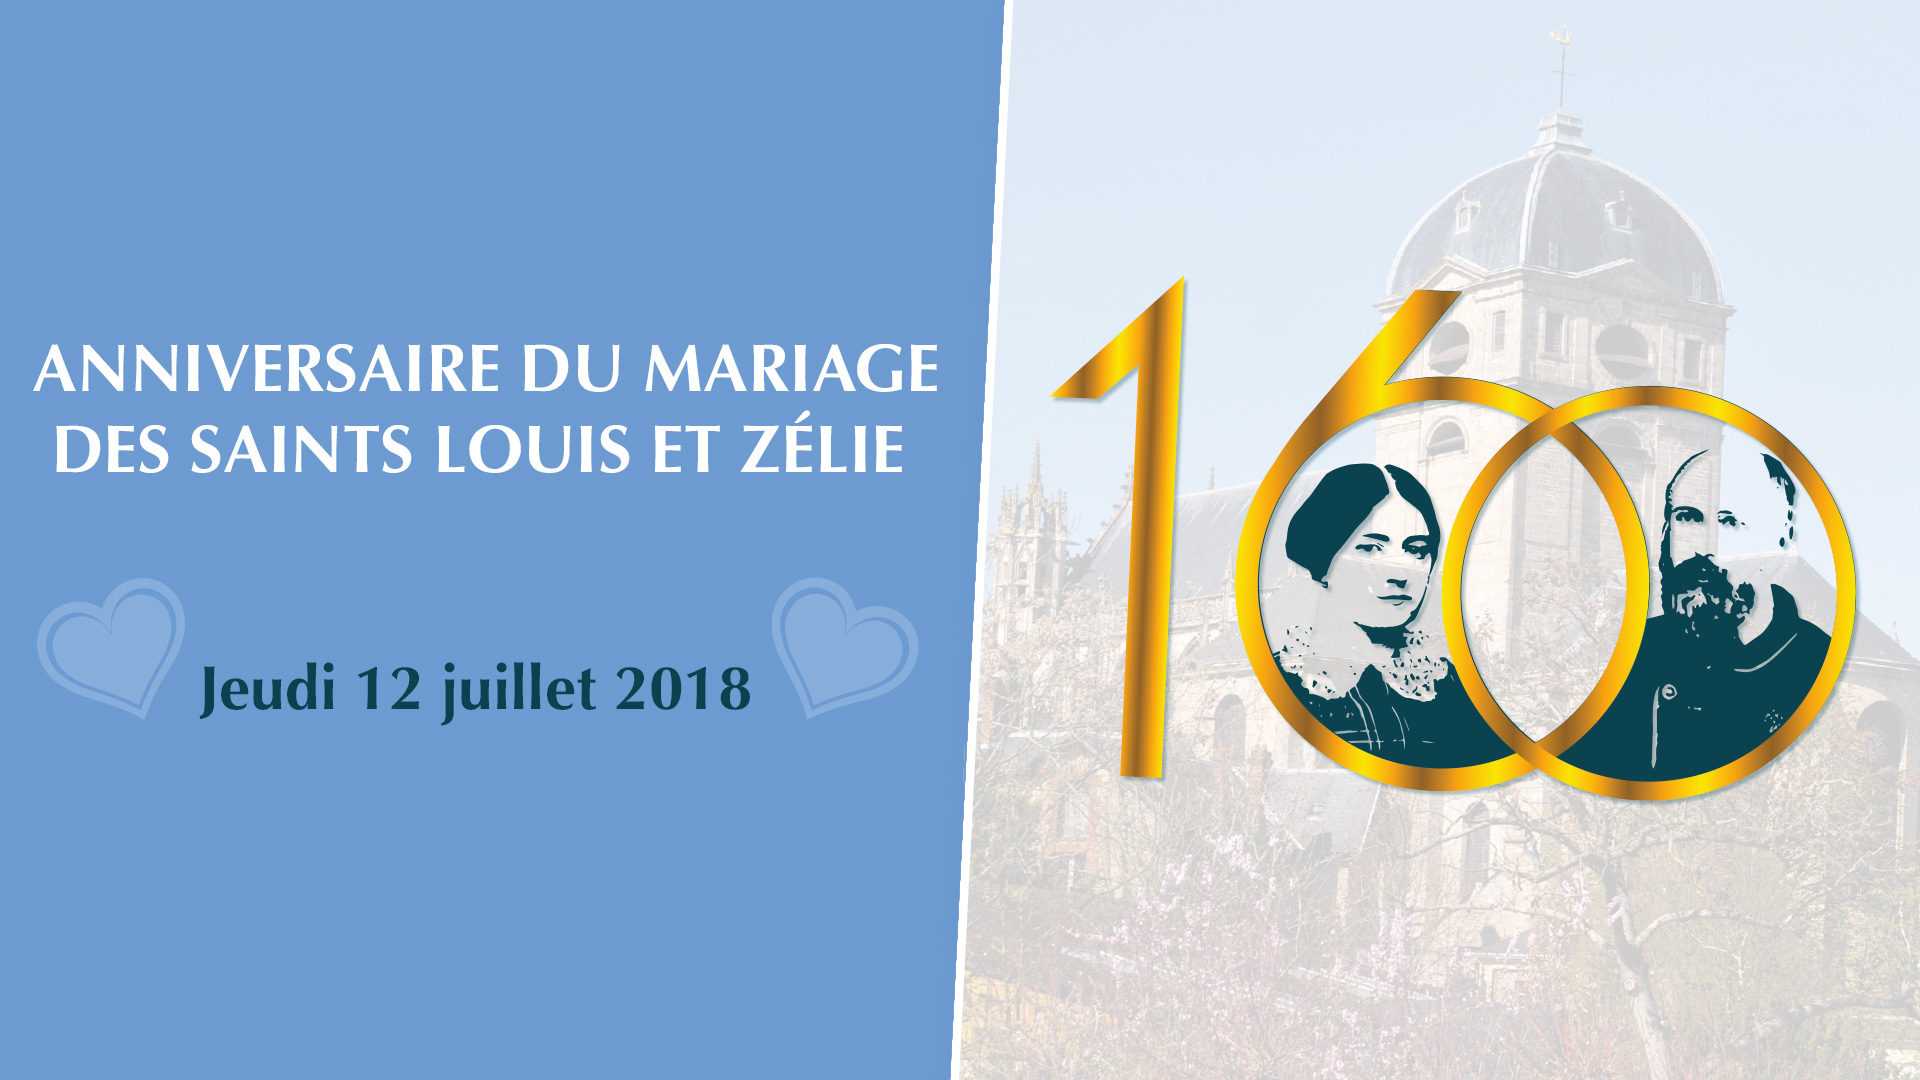 160e anniversaire du mariage des saints Louis et Zélie le 12 juillet 2018 au Sanctuaire d’Alençon (61)